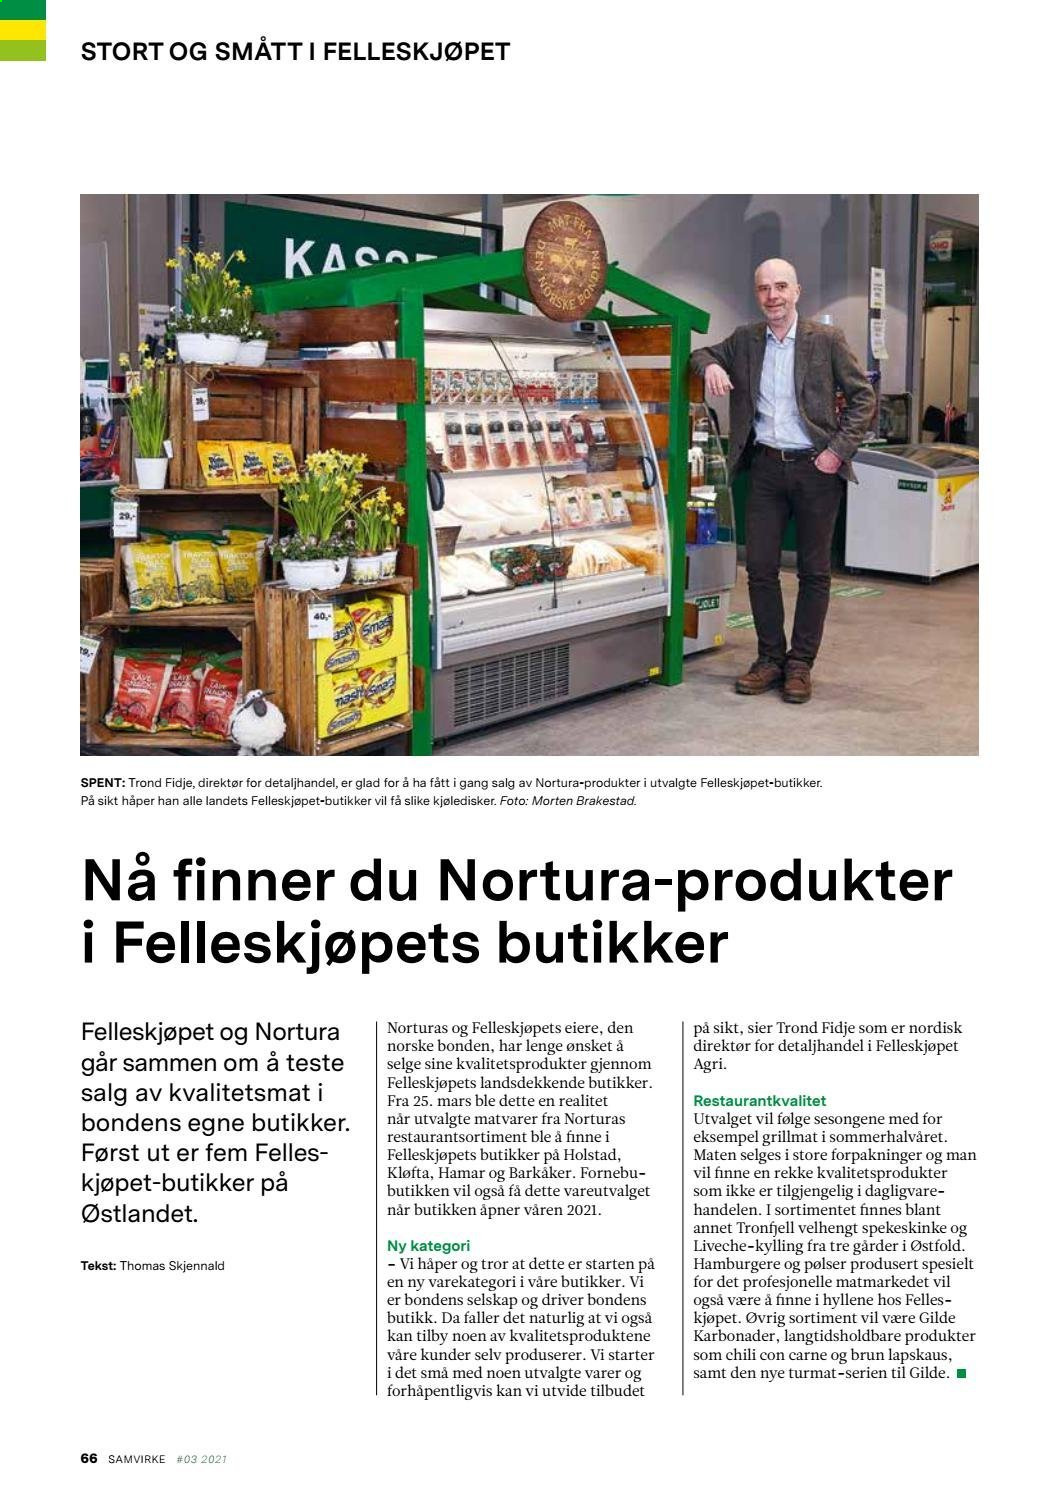 thumbnail - Kundeavis Felleskjøpet - 18.4.2021 - 20.6.2021 - Produkter fra tilbudsaviser - karbonader, lapskaus. Side 66.